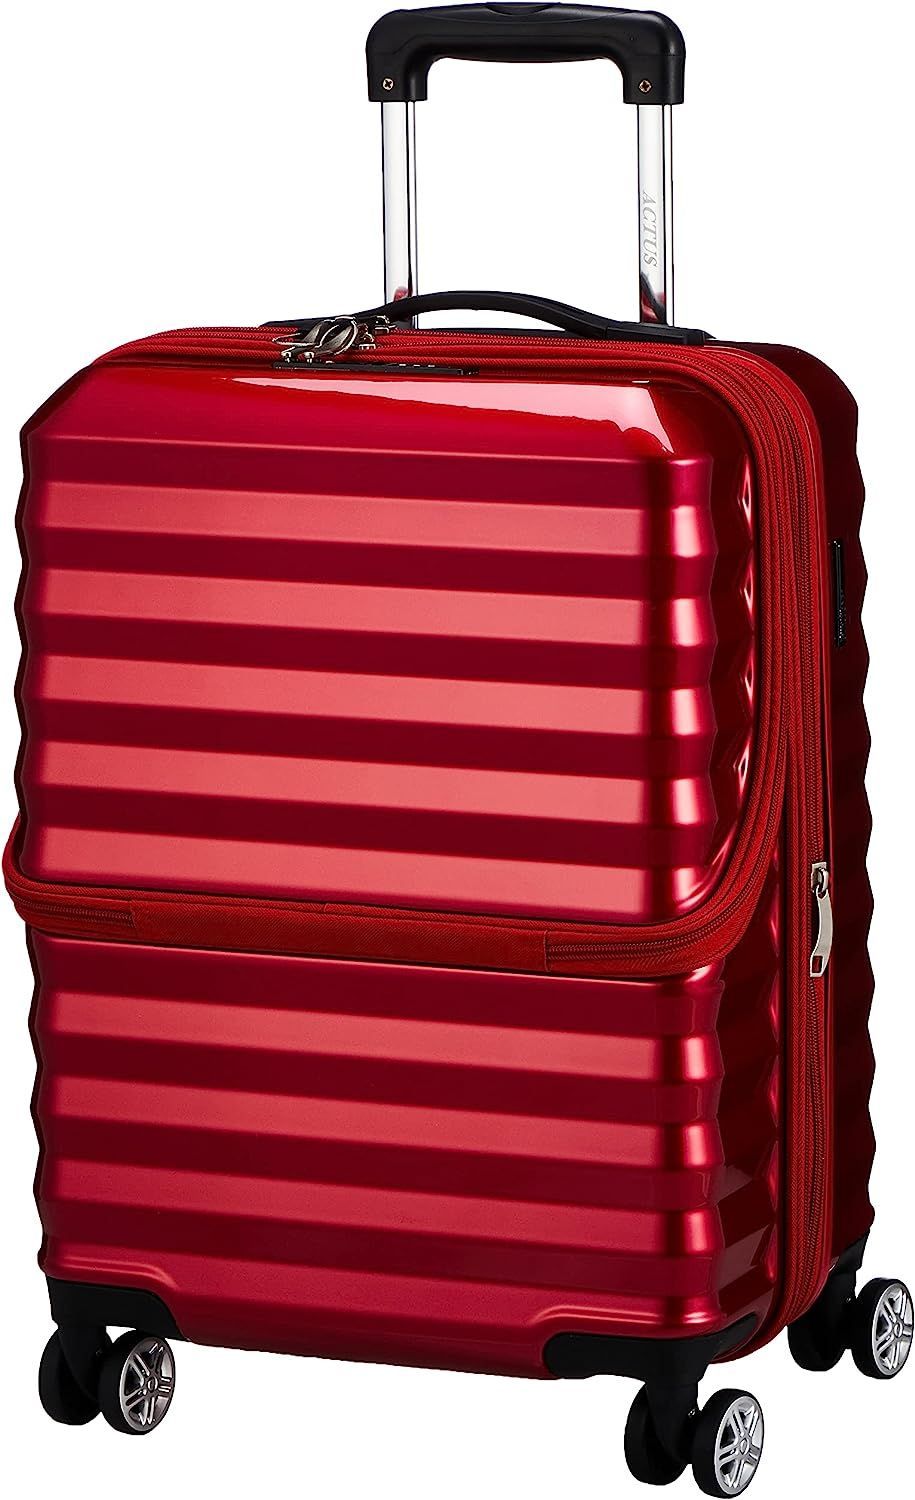 新品未開封 アクタス スーツケース 機内持ち込み可能 拡張フロント